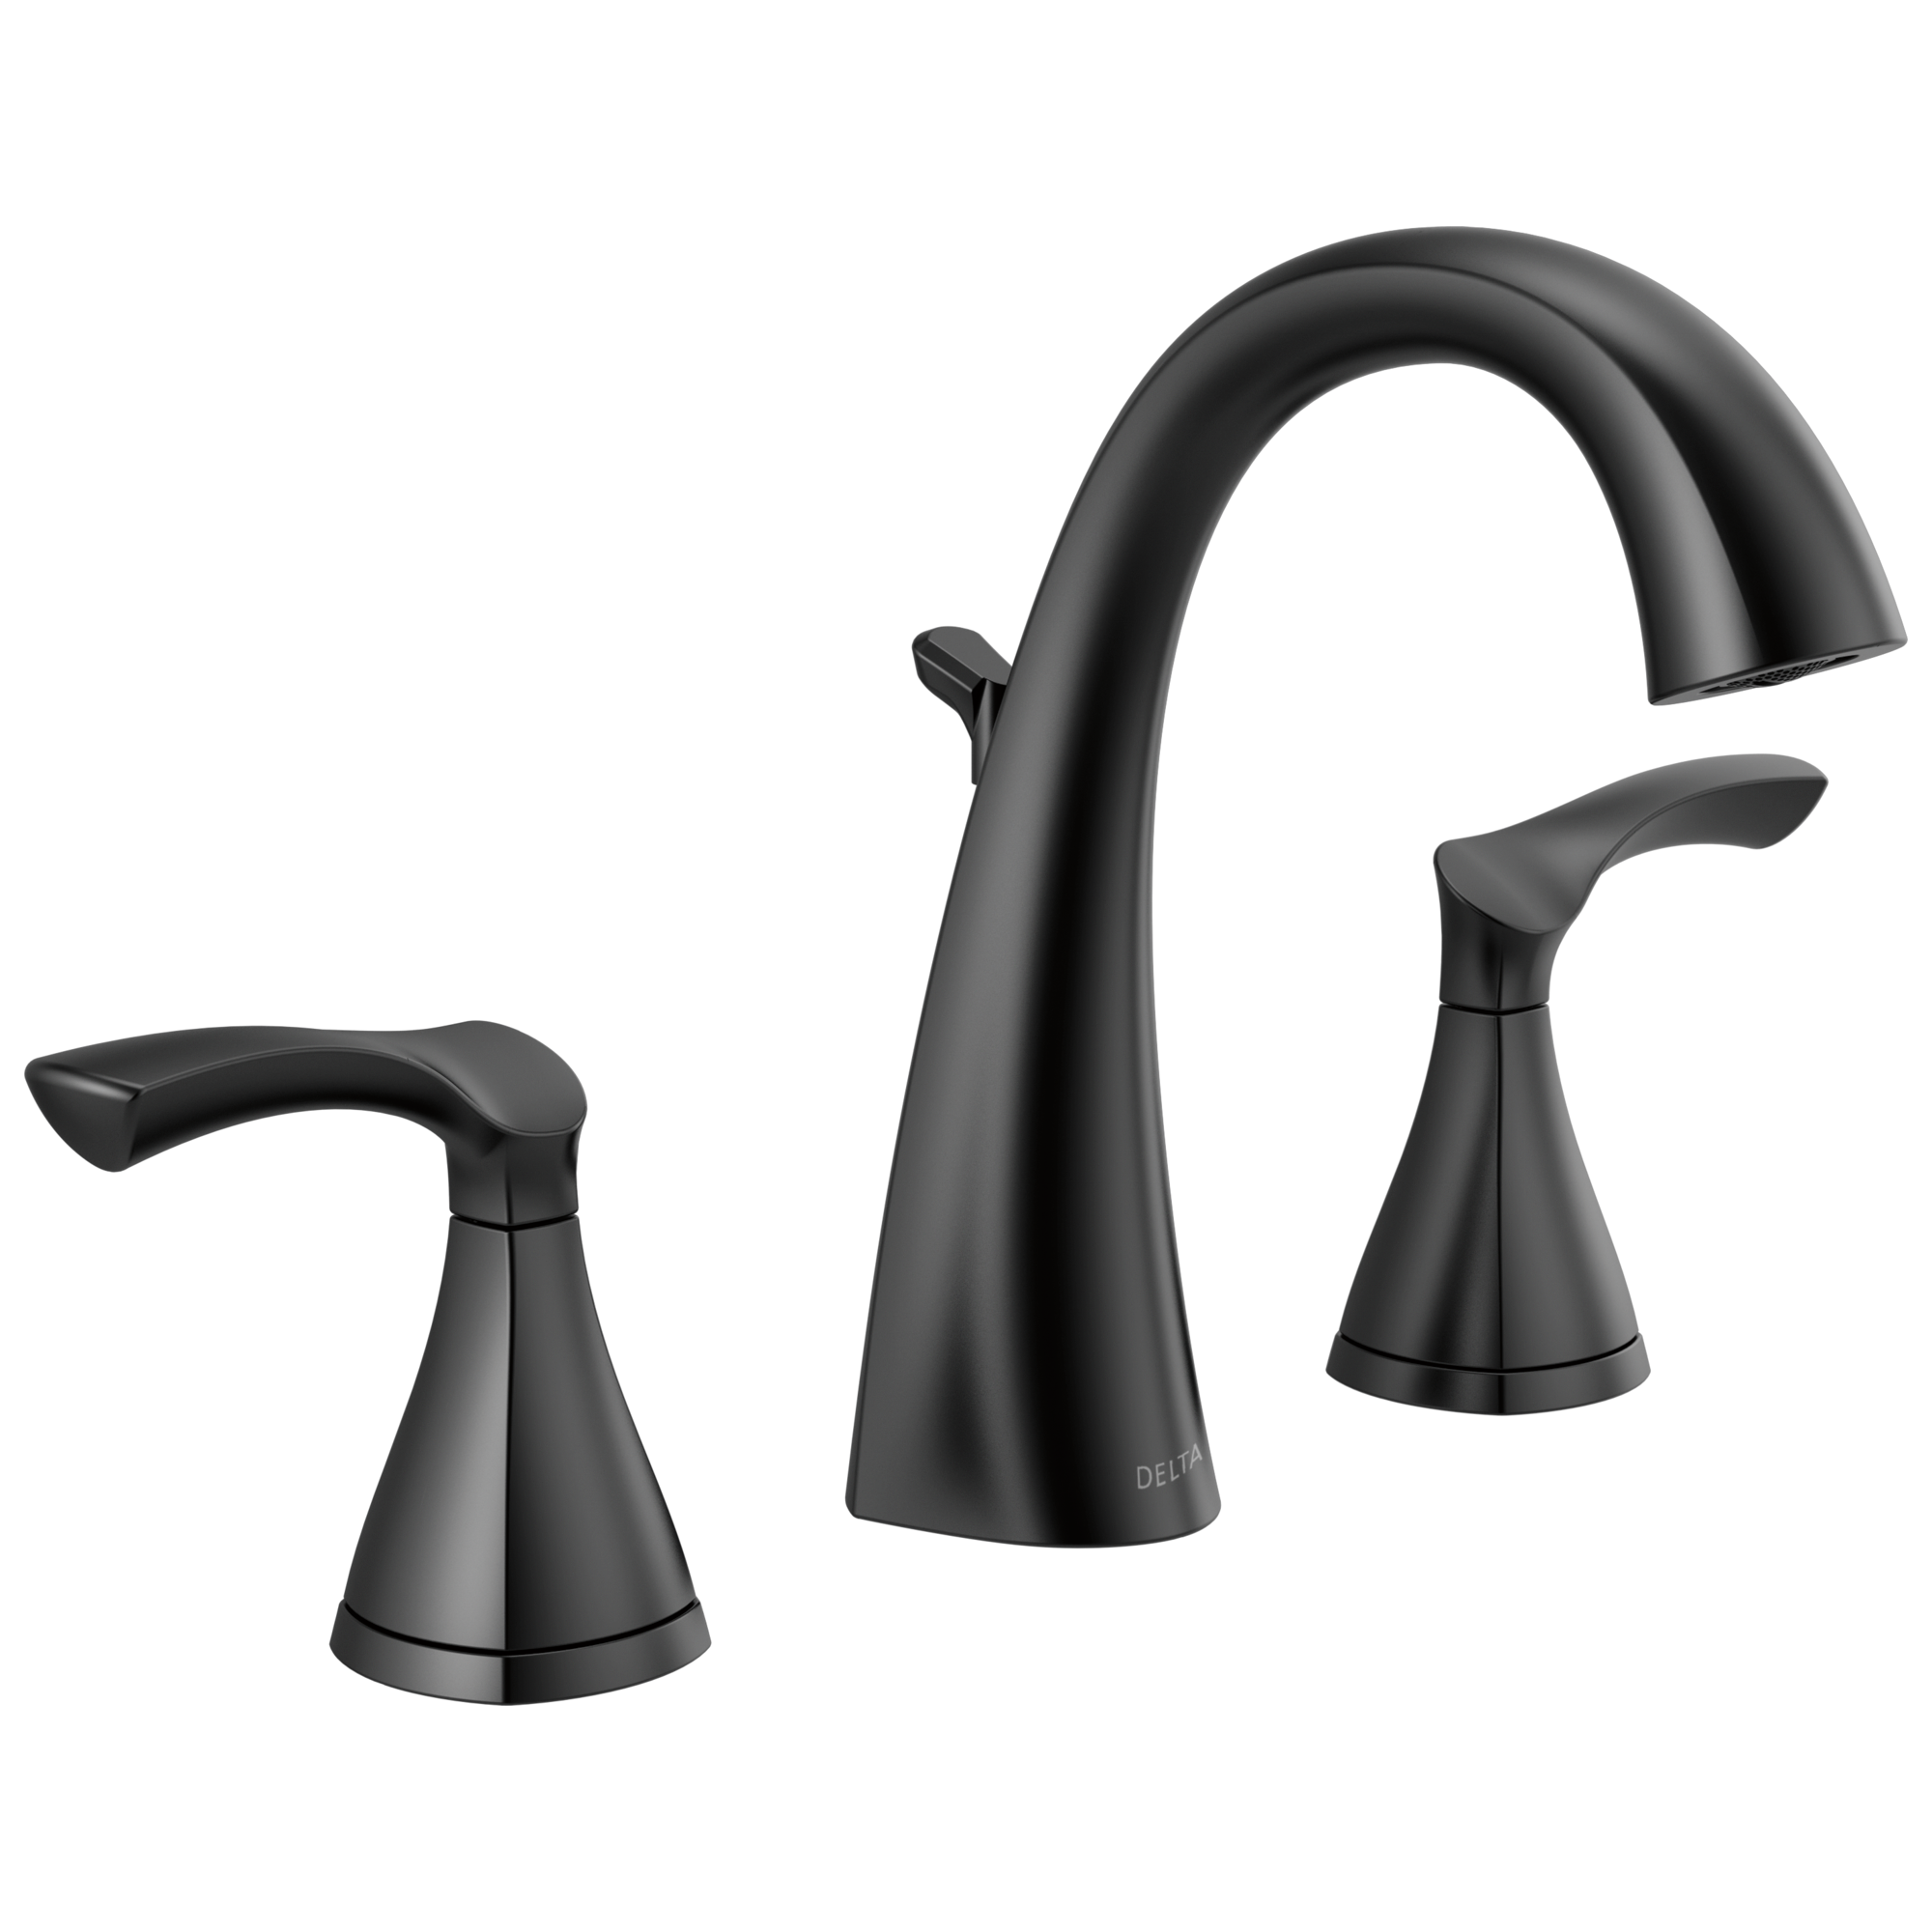 Delta Sandover Matte Black 2-handle Widespread WaterSense High-arc Bathroom Sink Faucet with Drain